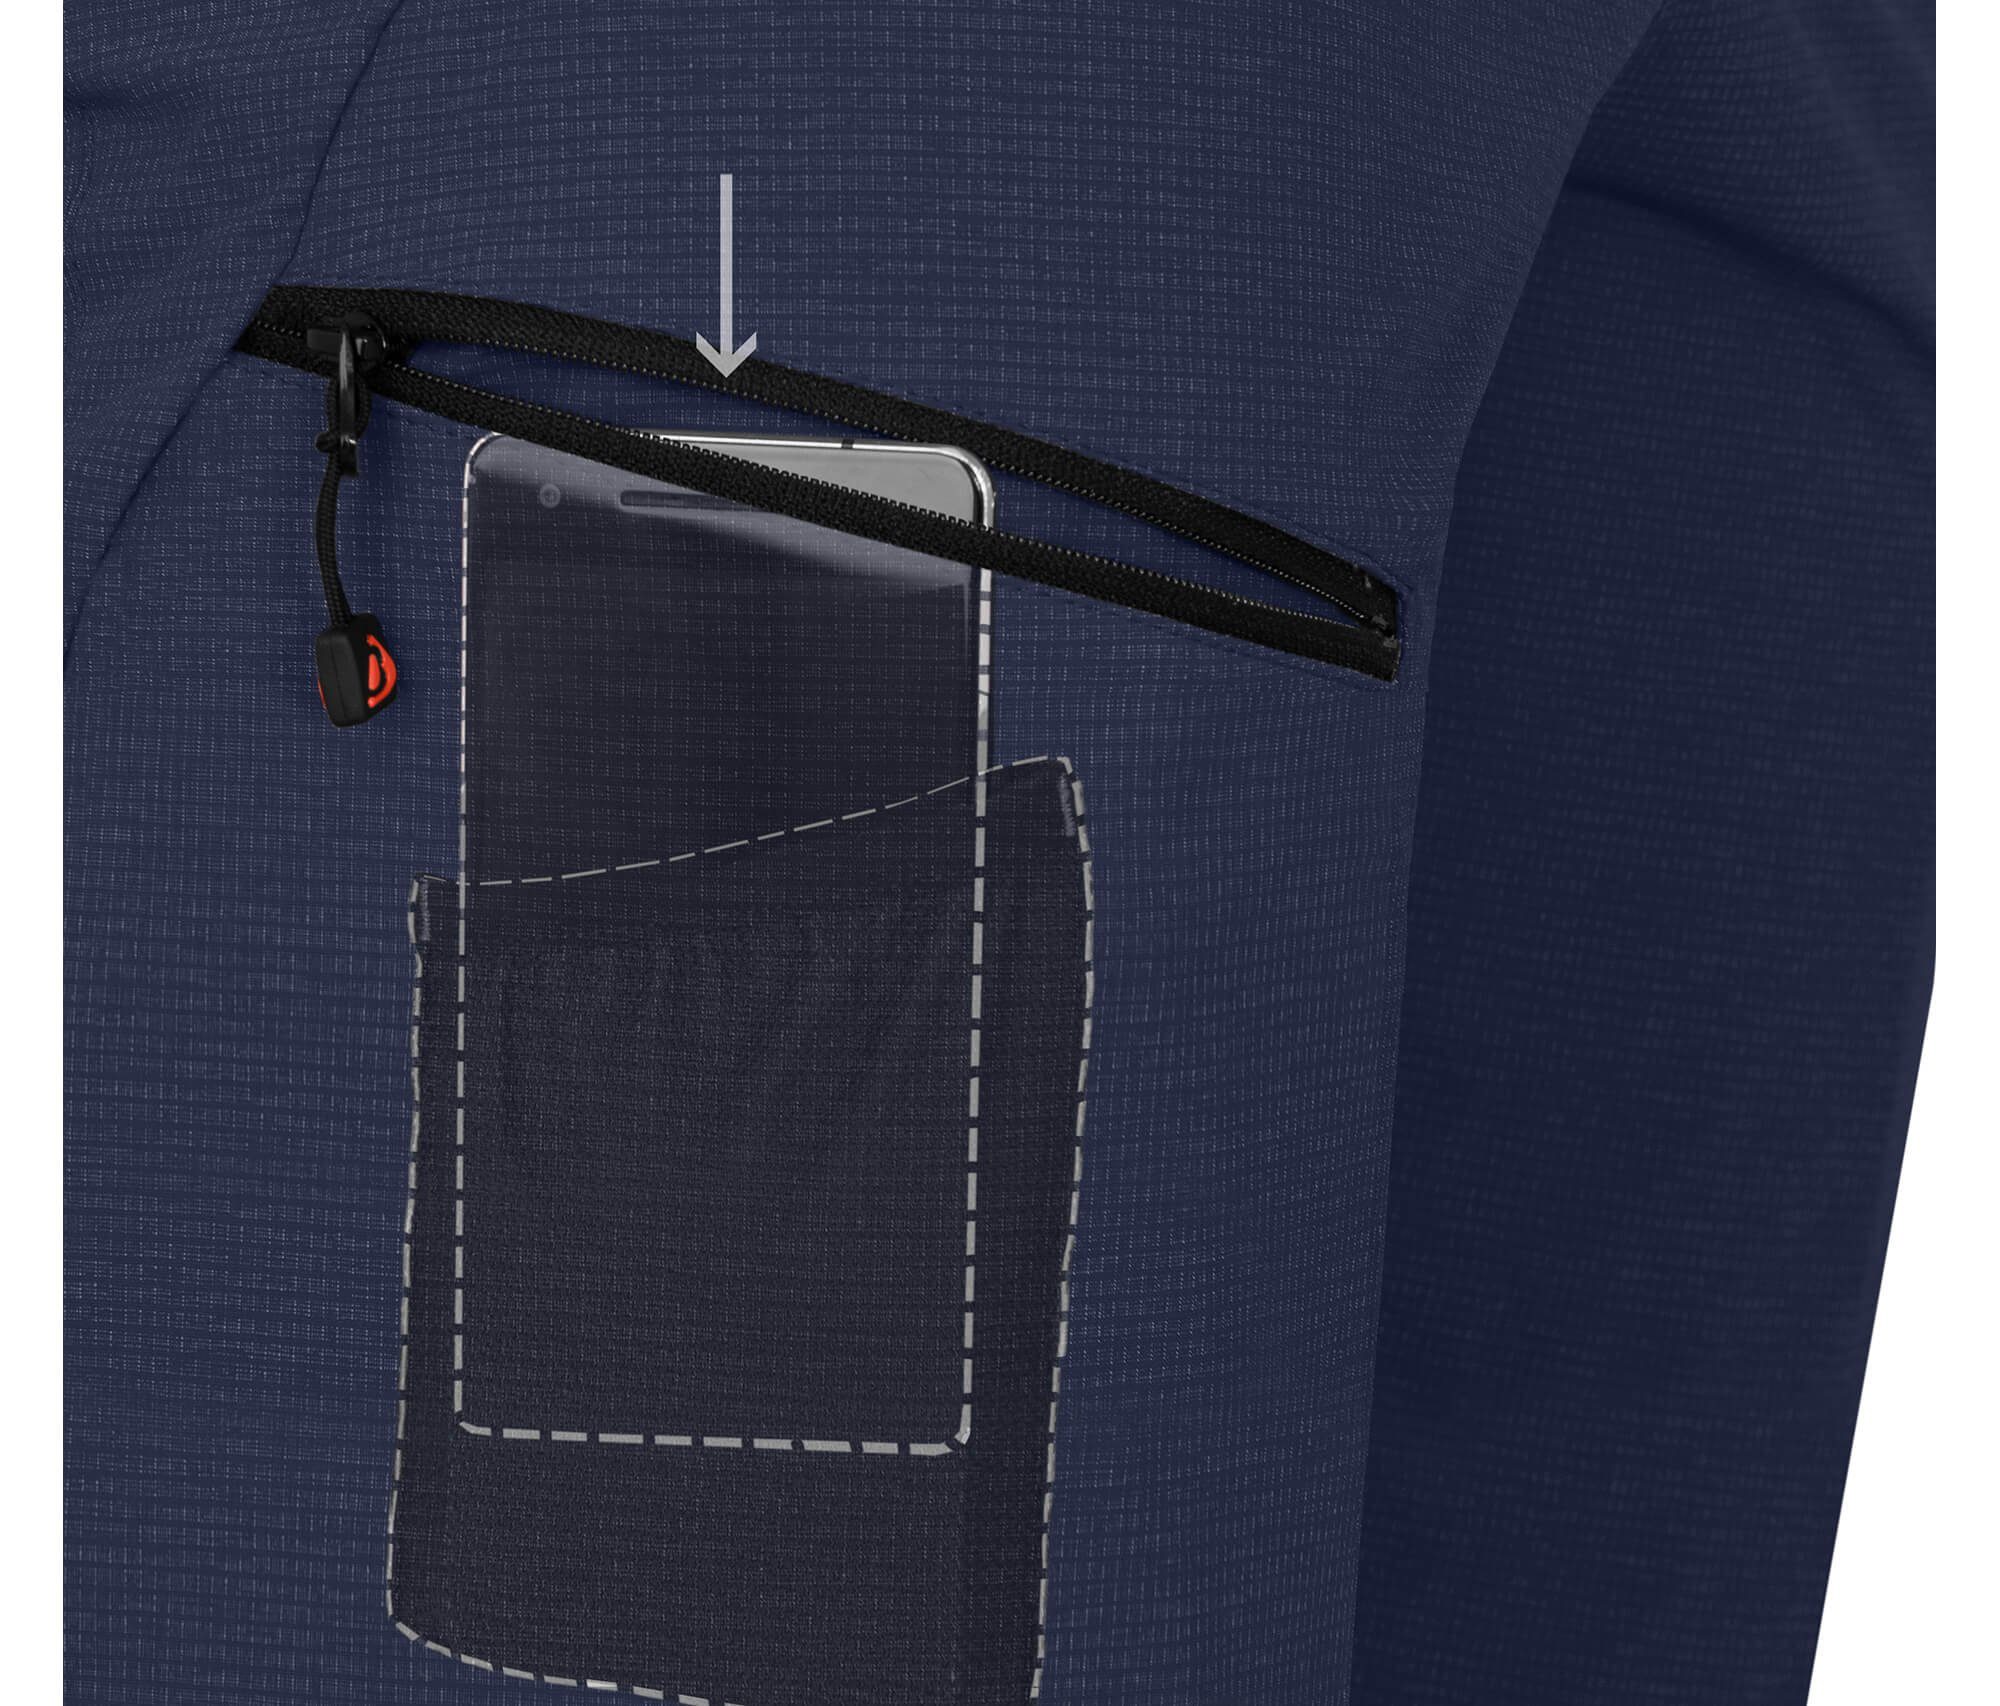 Doppel Zip-off-Hose Herren Bergson mit peacoat robust blau LEBIKO Wanderhose, Zipp-Off T-ZIPP Kurzgrößen, elastisch,